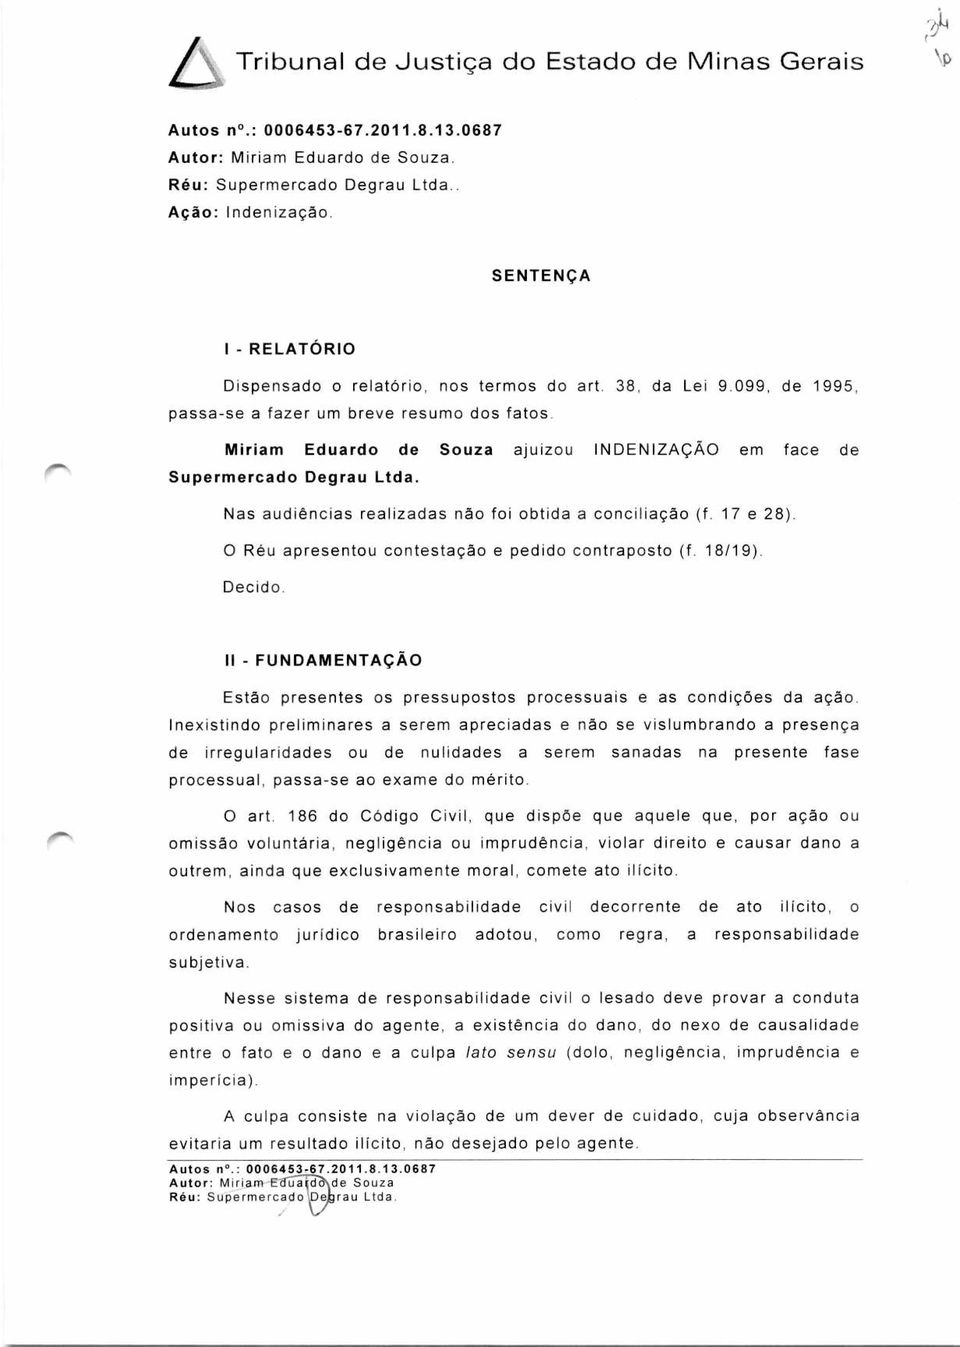 Miriam Eduardo de Souza ajuizou INDENIZAÇÃO em face de Supermercado Degrau Ltda. Nas audiências realizadas não foi obtida a conciliação (f. 17 e 28).